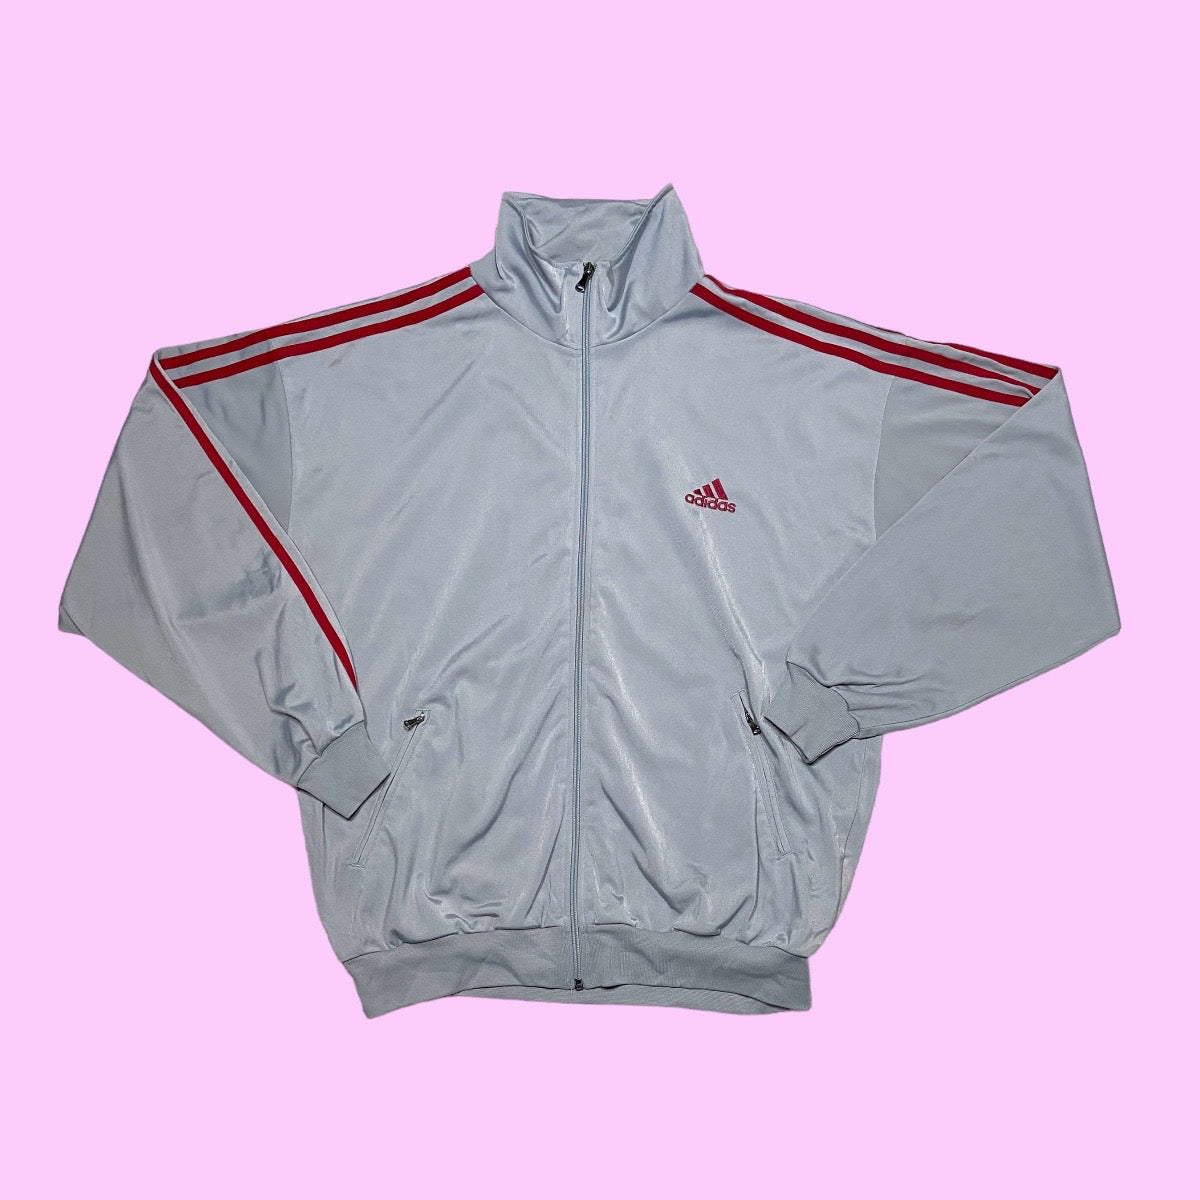 Vintage adidas track jacket - M